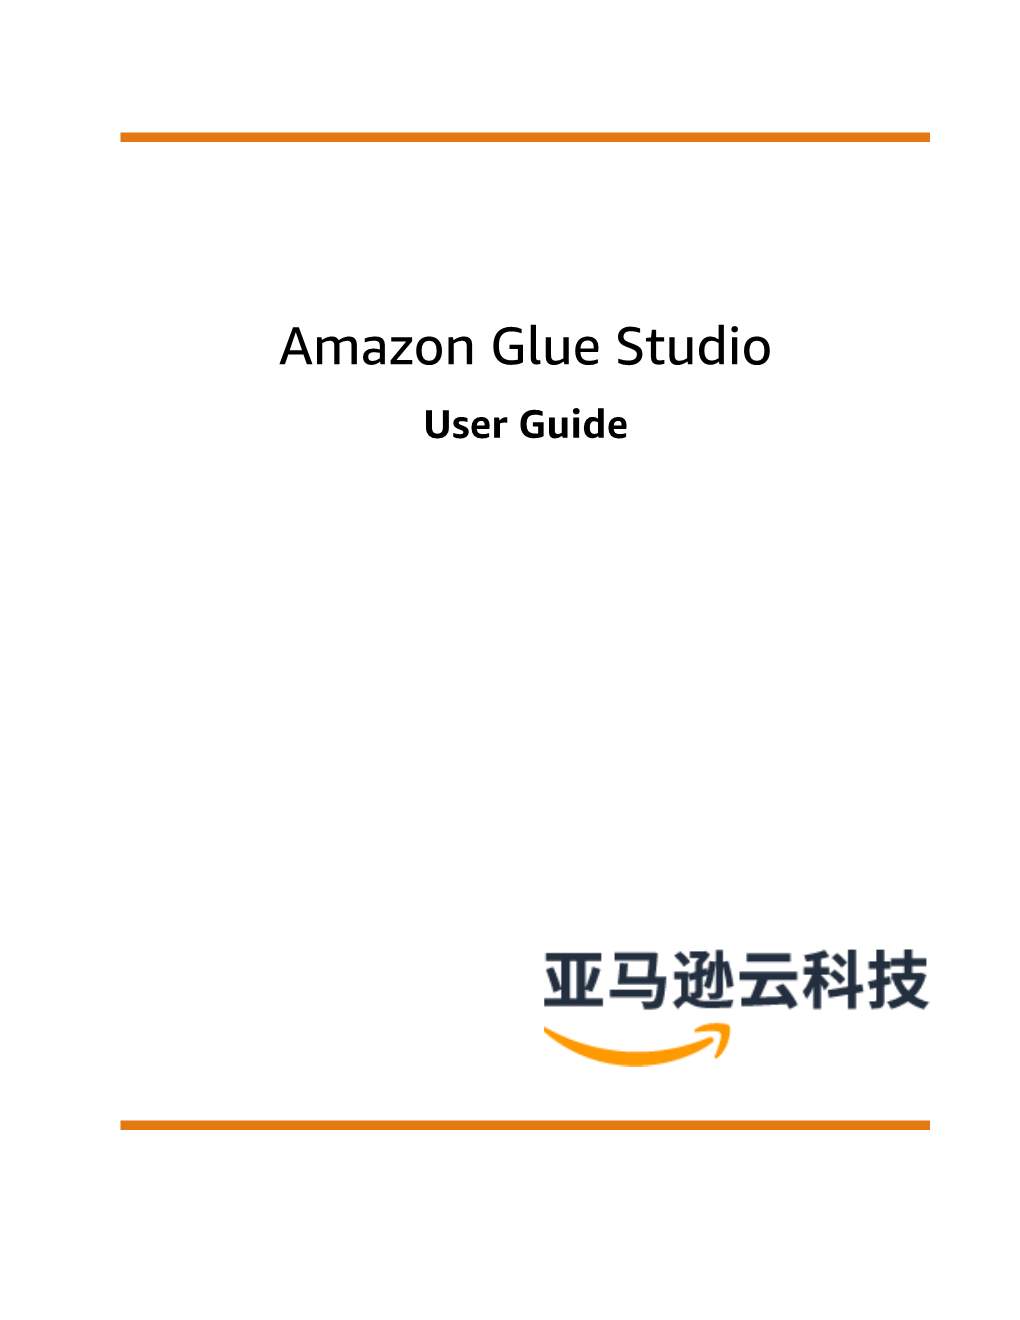 Amazon Glue Studio User Guide Amazon Glue Studio User Guide